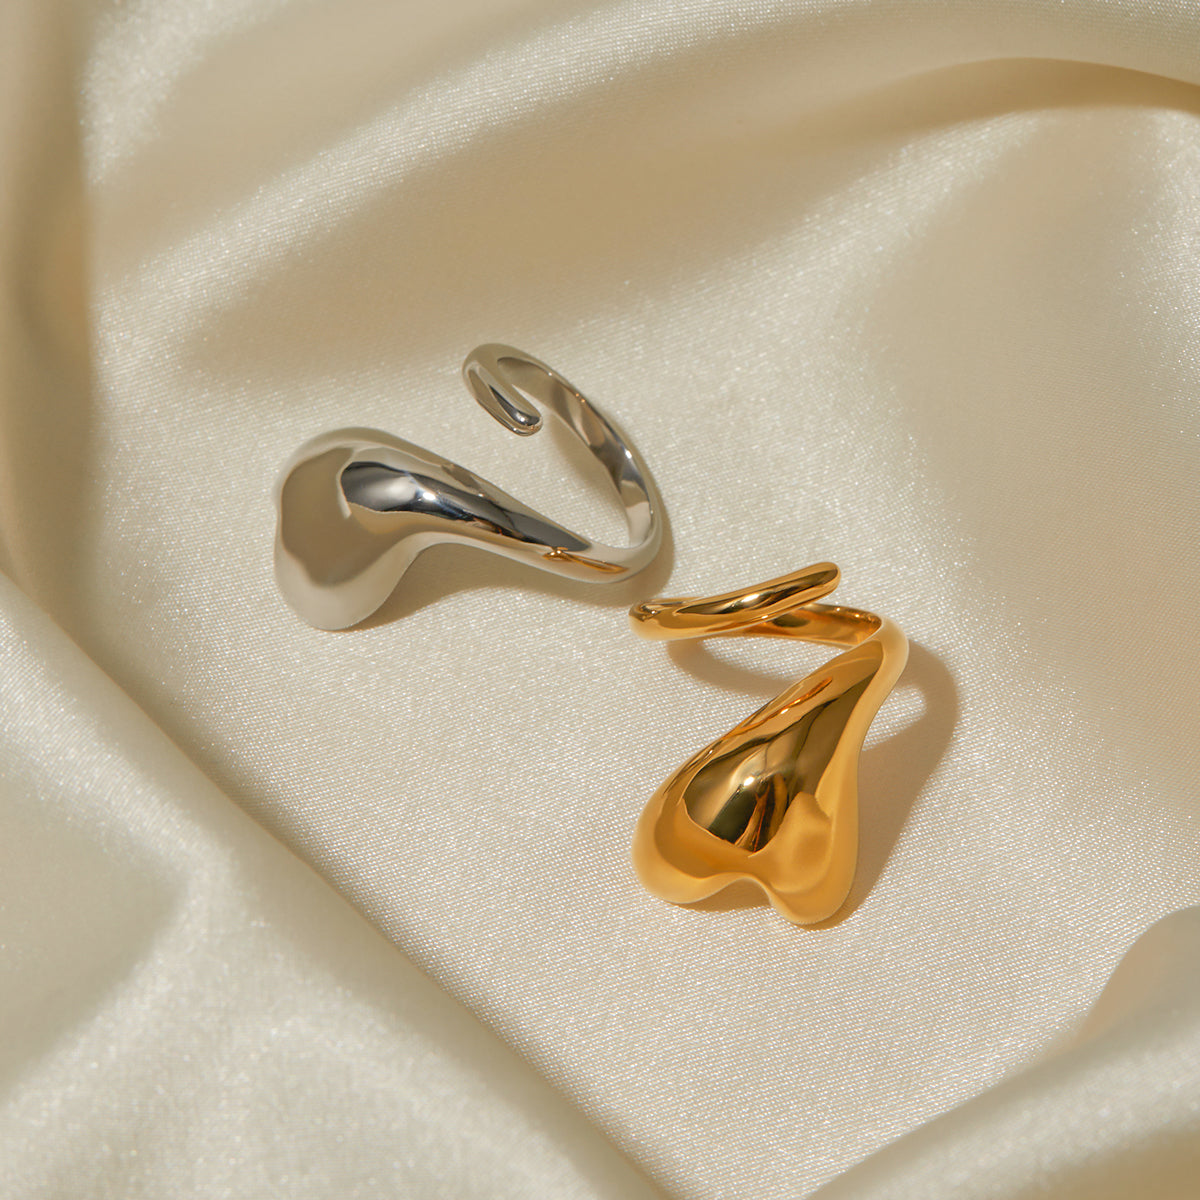 IG Style ανοιχτό δαχτυλίδι σε σχήμα καρδιάς από ατσάλι